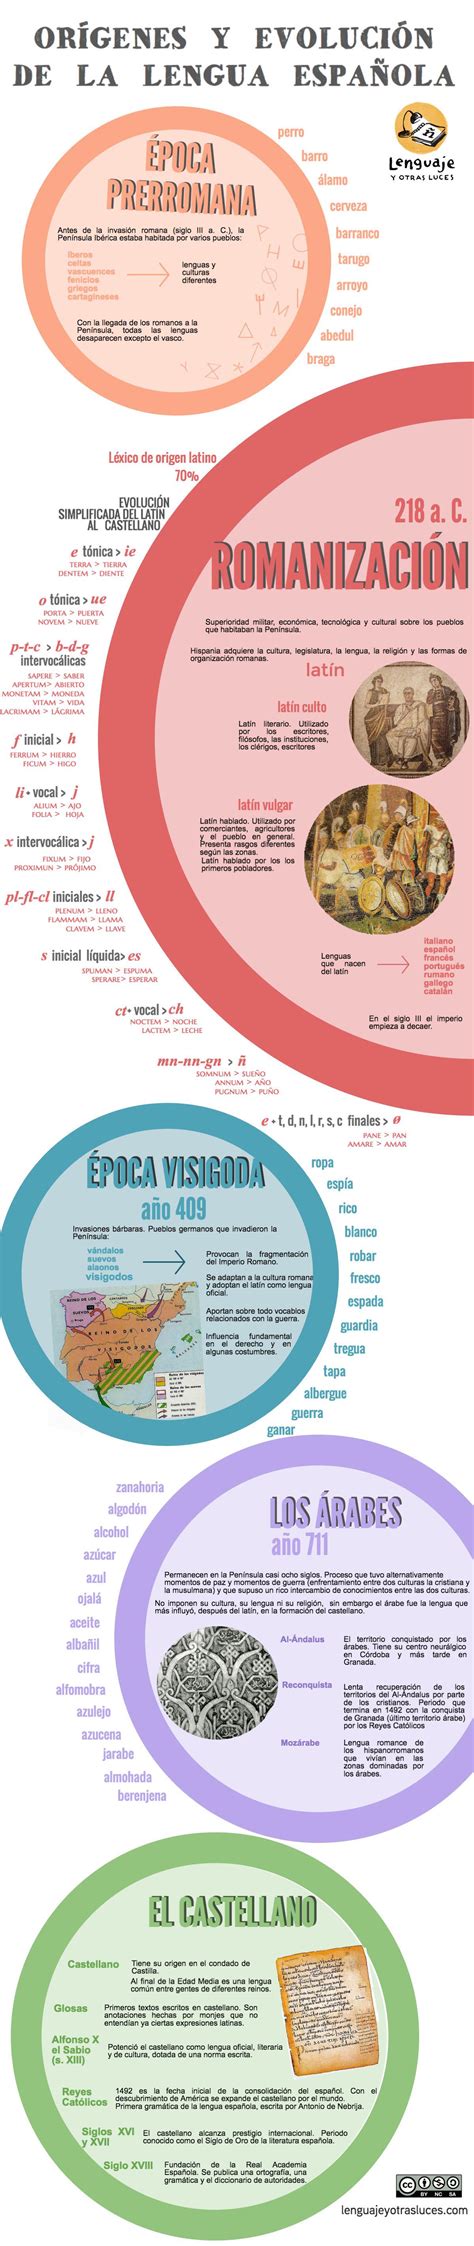 Origen y evolución de la lengua española | lenguaje y ...